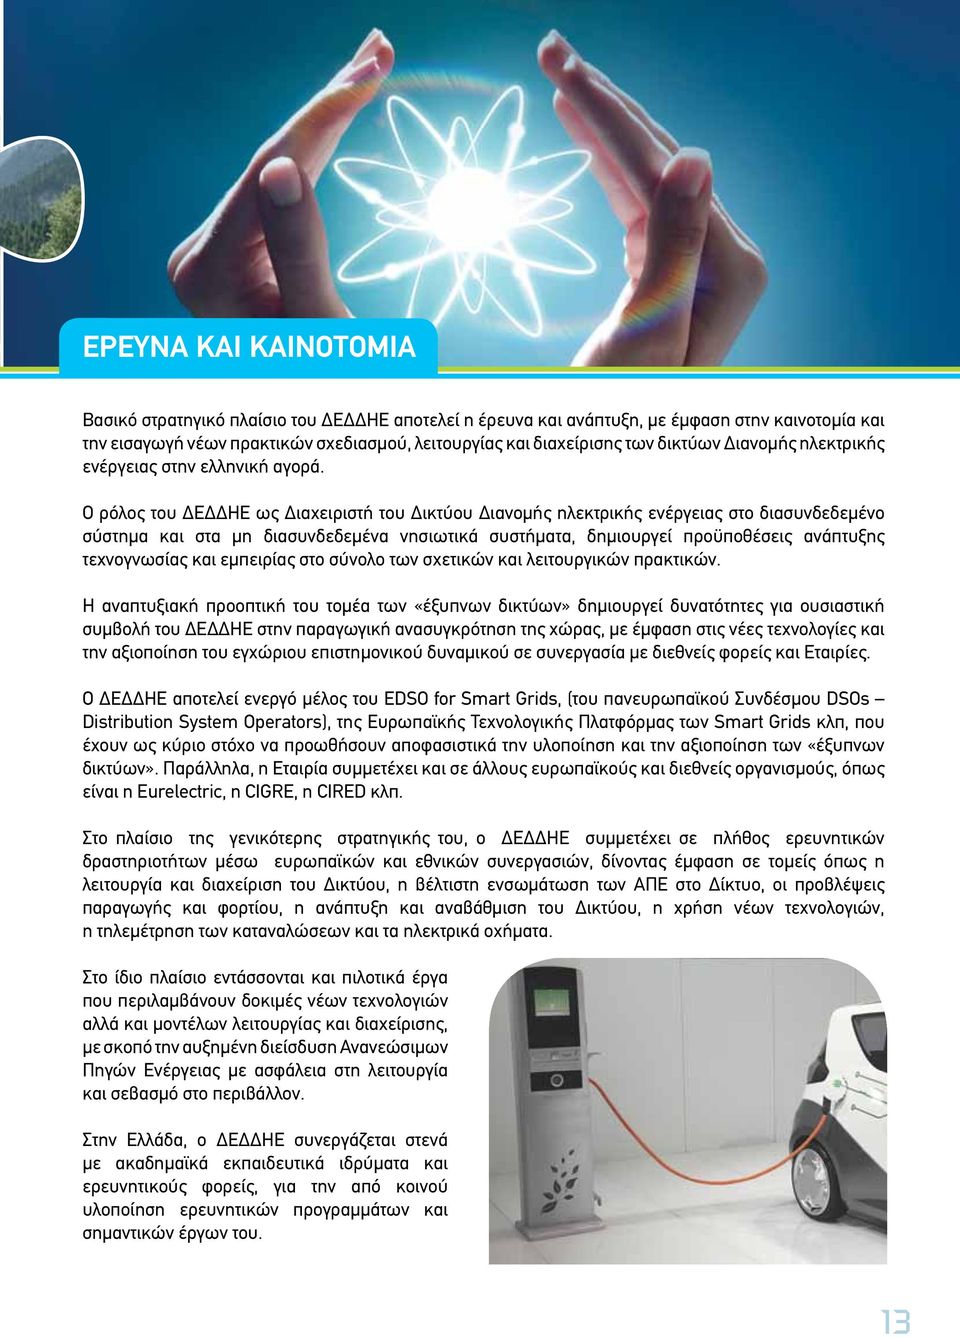 Ο ρόλος του ΔΕΔΔΗΕ ως Διαχειριστή του Δικτύου Διανομής ηλεκτρικής ενέργειας στο διασυνδεδεμένο σύστημα και στα μη διασυνδεδεμένα νησιωτικά συστήματα, δημιουργεί προϋποθέσεις ανάπτυξης τεχνογνωσίας